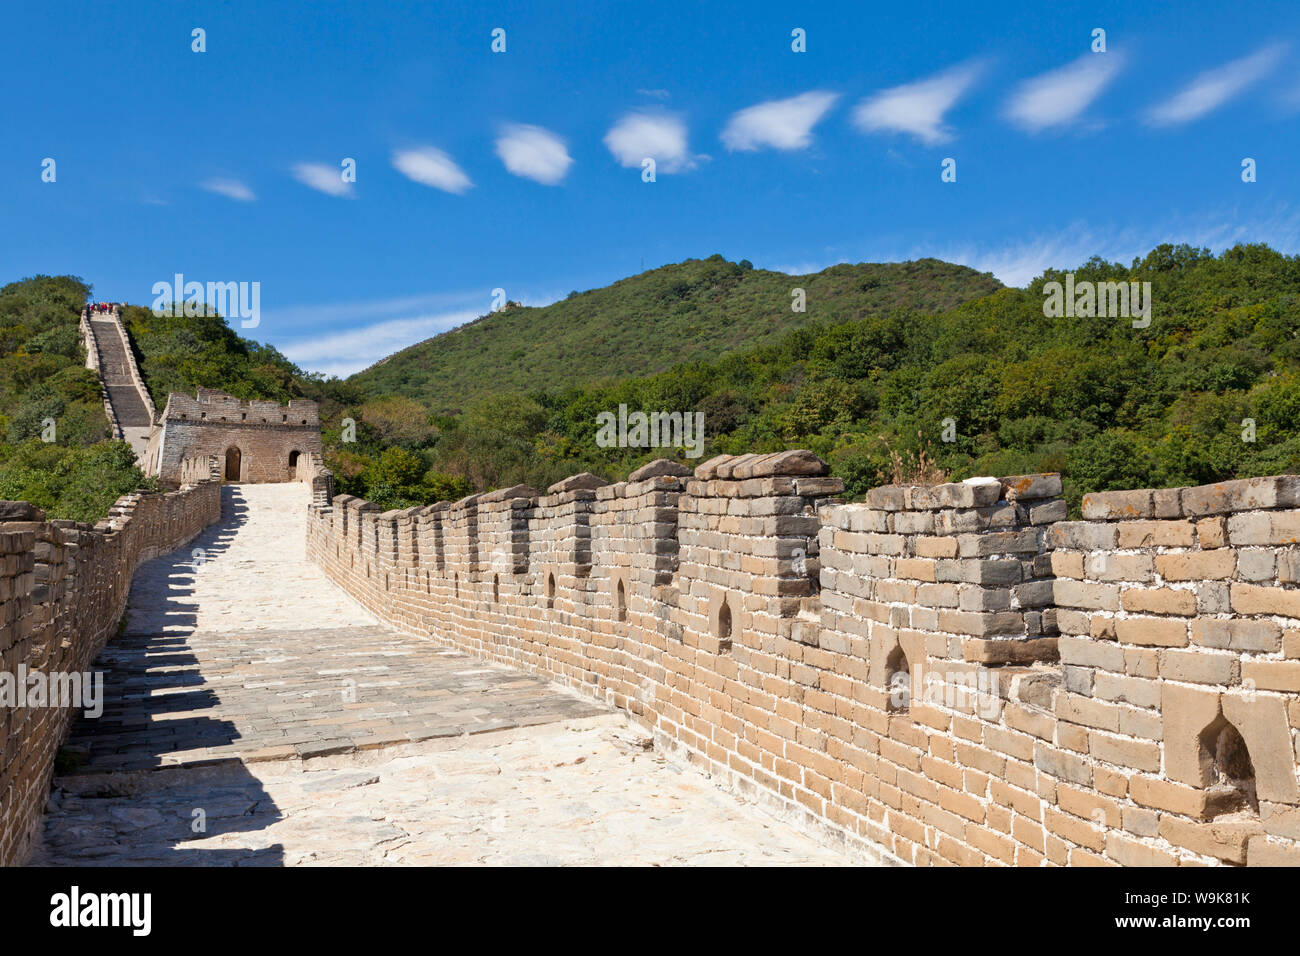 Neu Abschnitt der Großen Mauer von China wiederhergestellt, UNESCO-Weltkulturerbe, Mutianyu, Peking, China, Asien Stockfoto